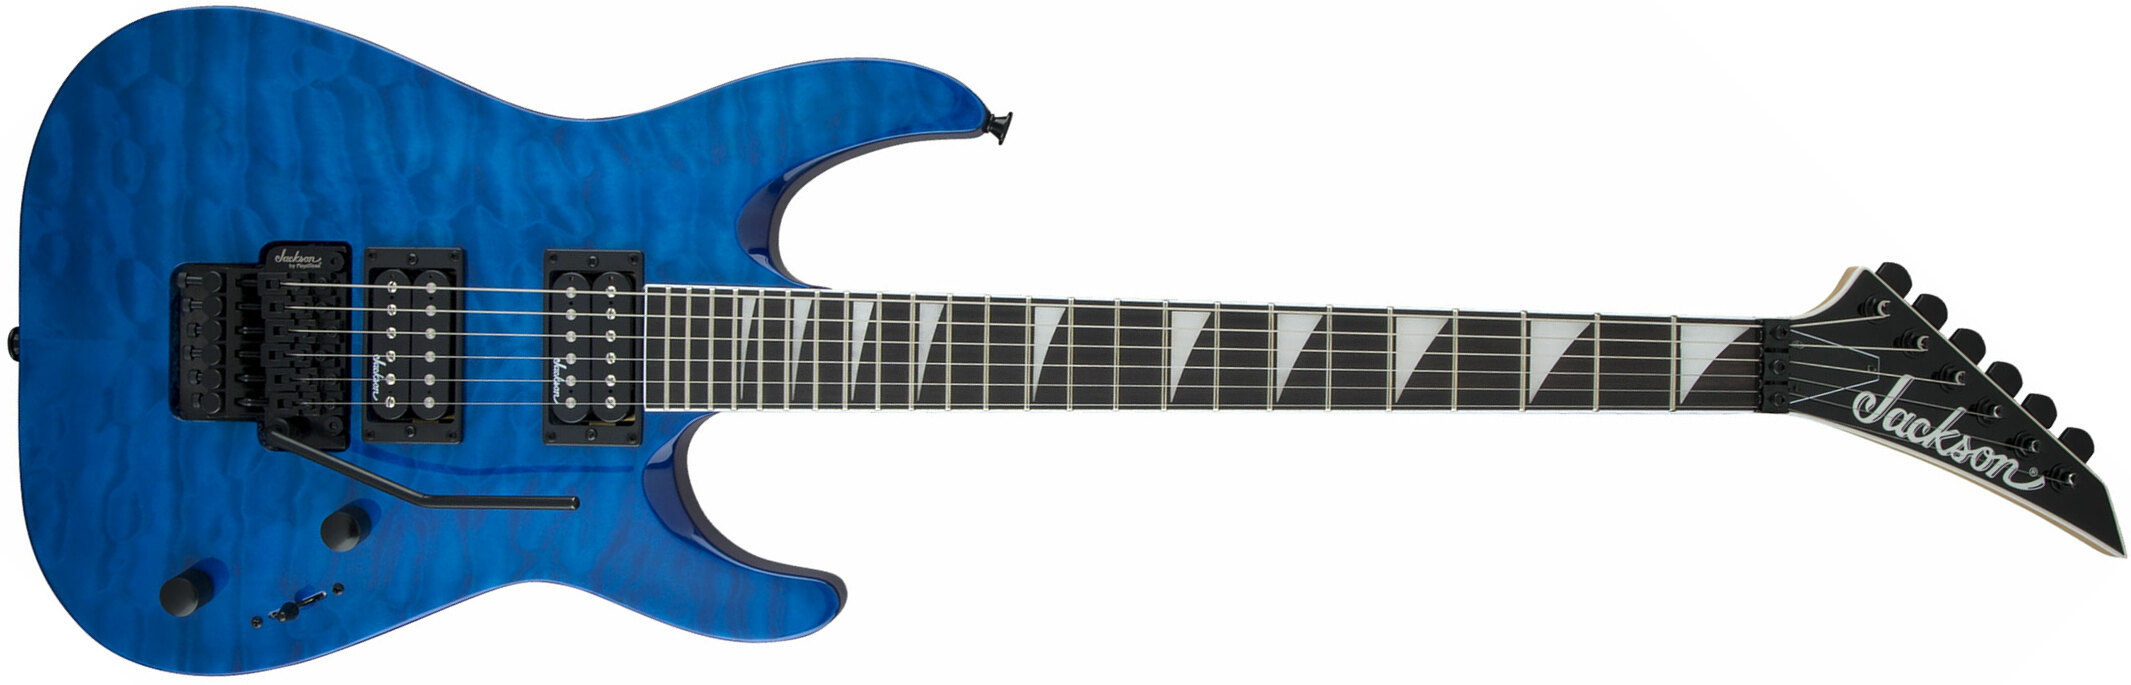 Jackson Dinky Archtop Js32q Dka 2h Fr Ama - Trans Blue - Double cut electric guitar - Main picture